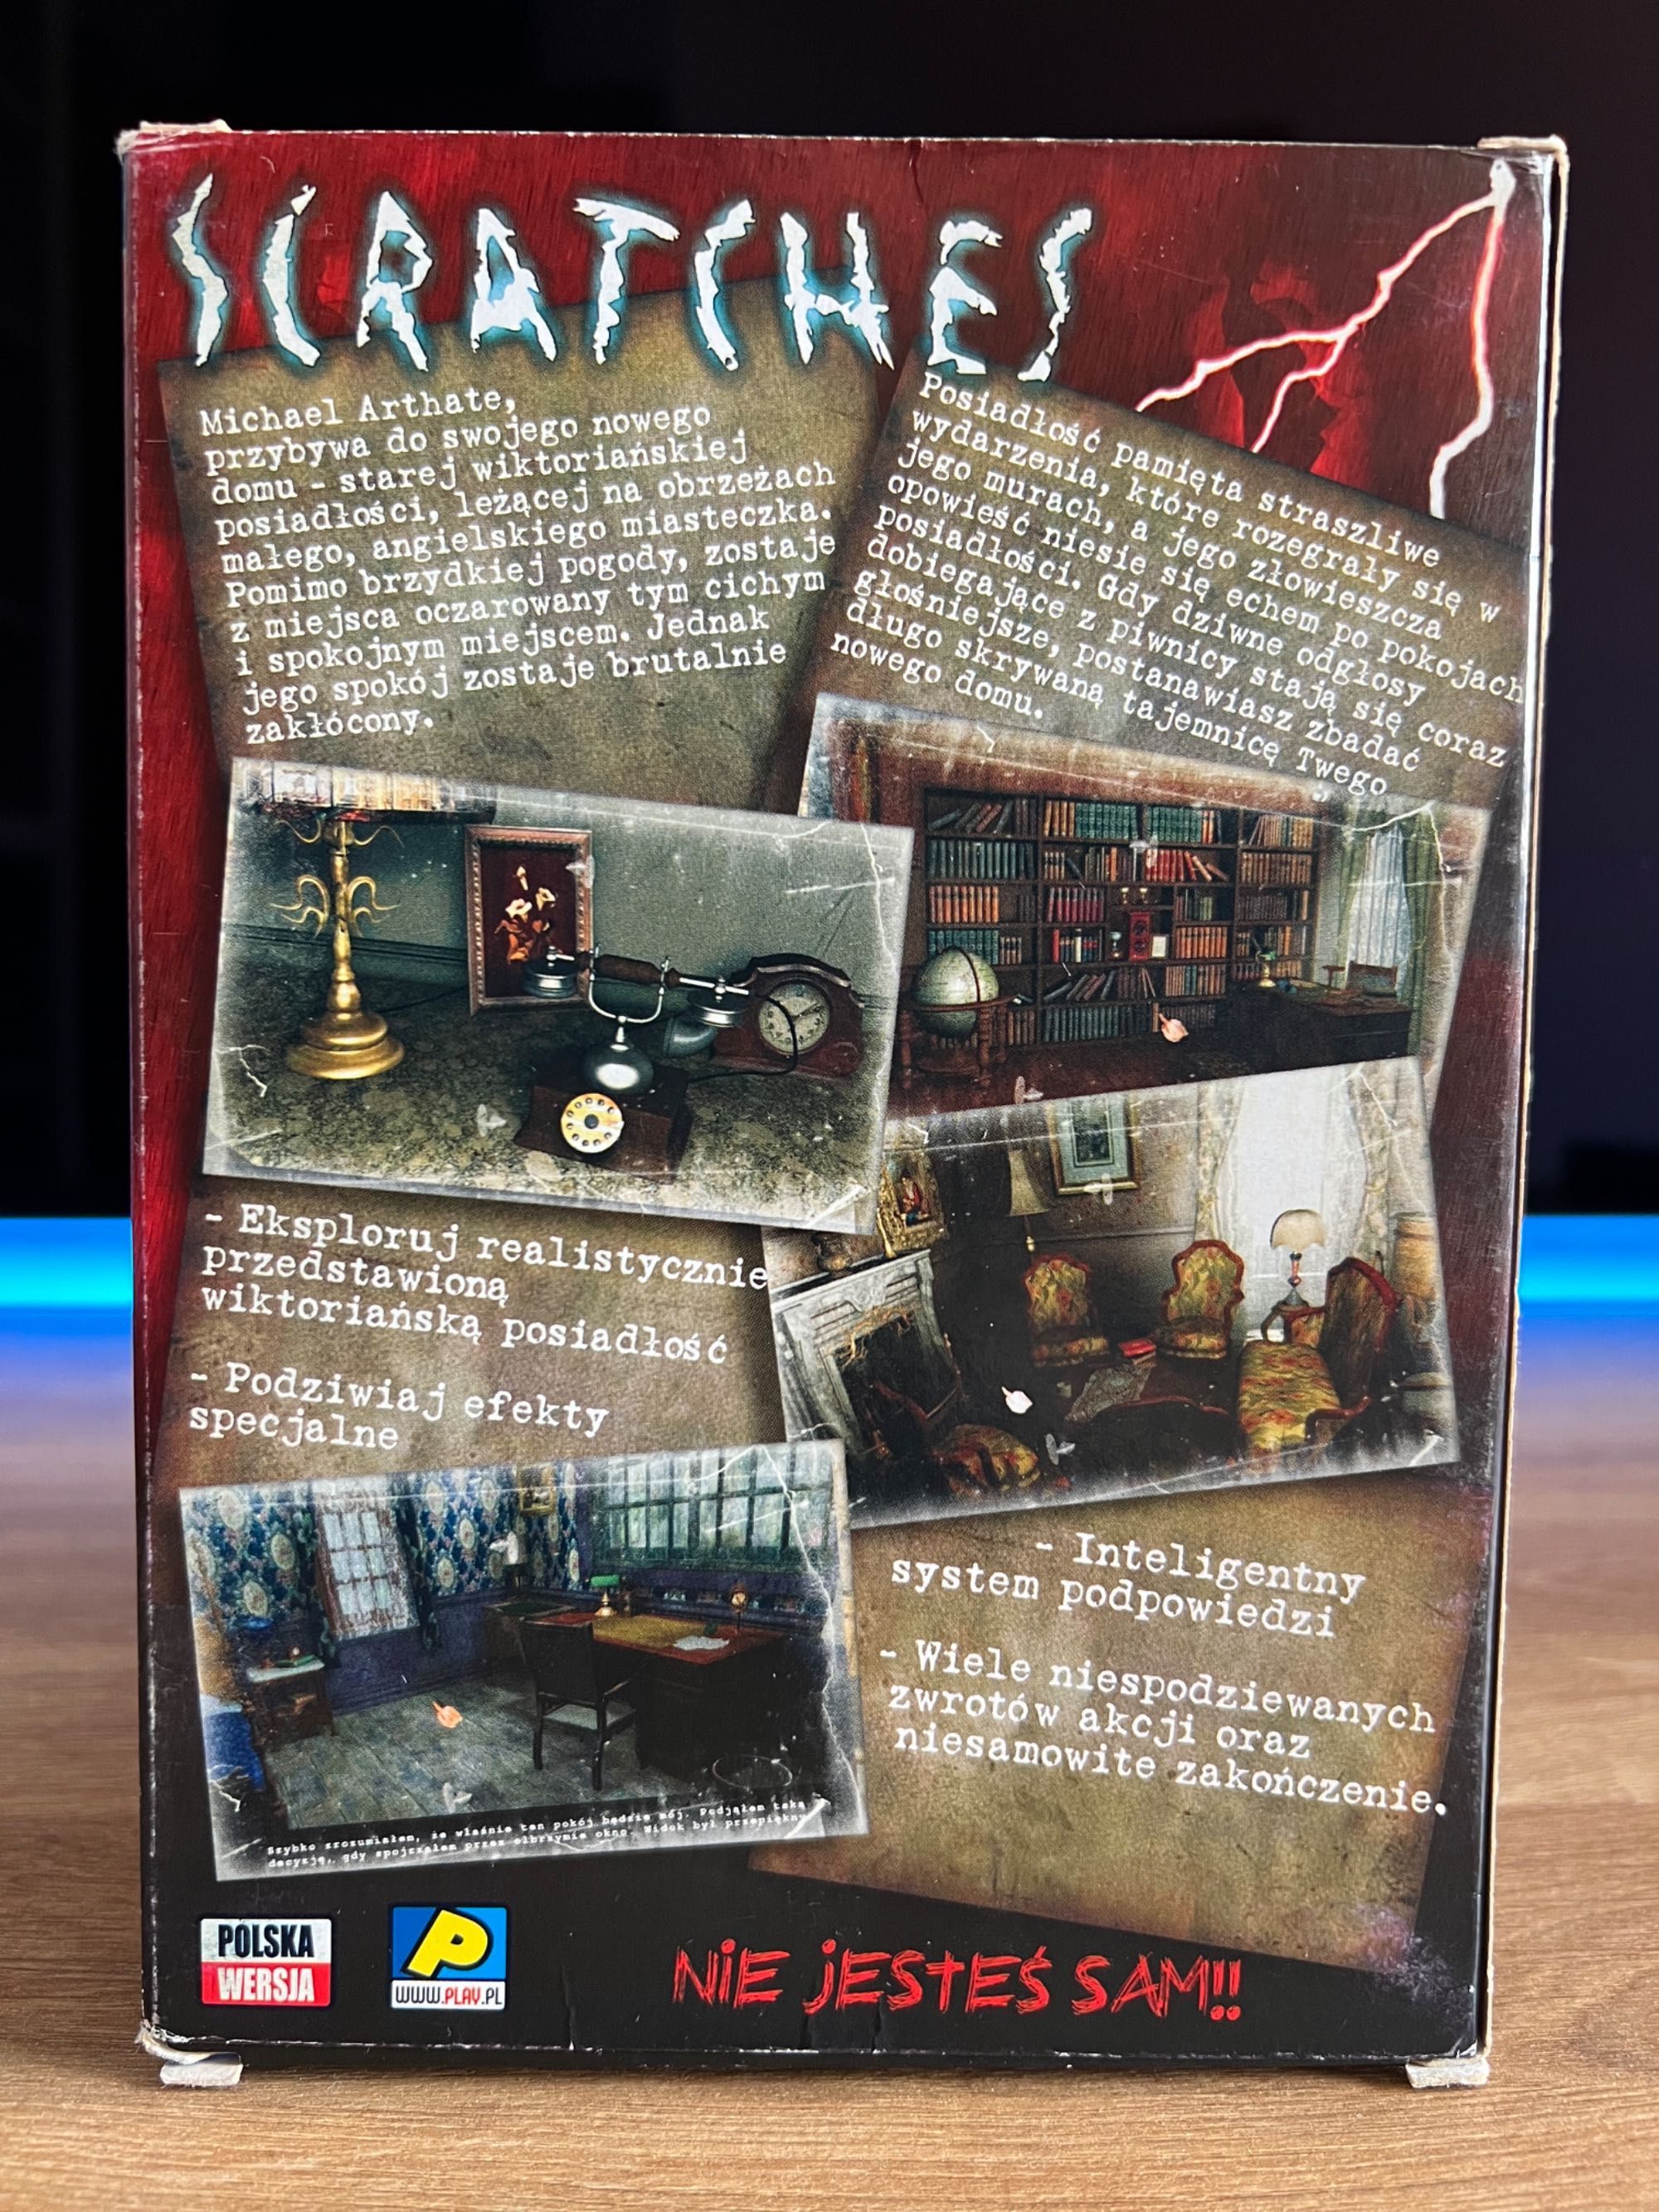 Scratches gra unikat (PC PL 2006) mini BIG BOX premierowe wydanie